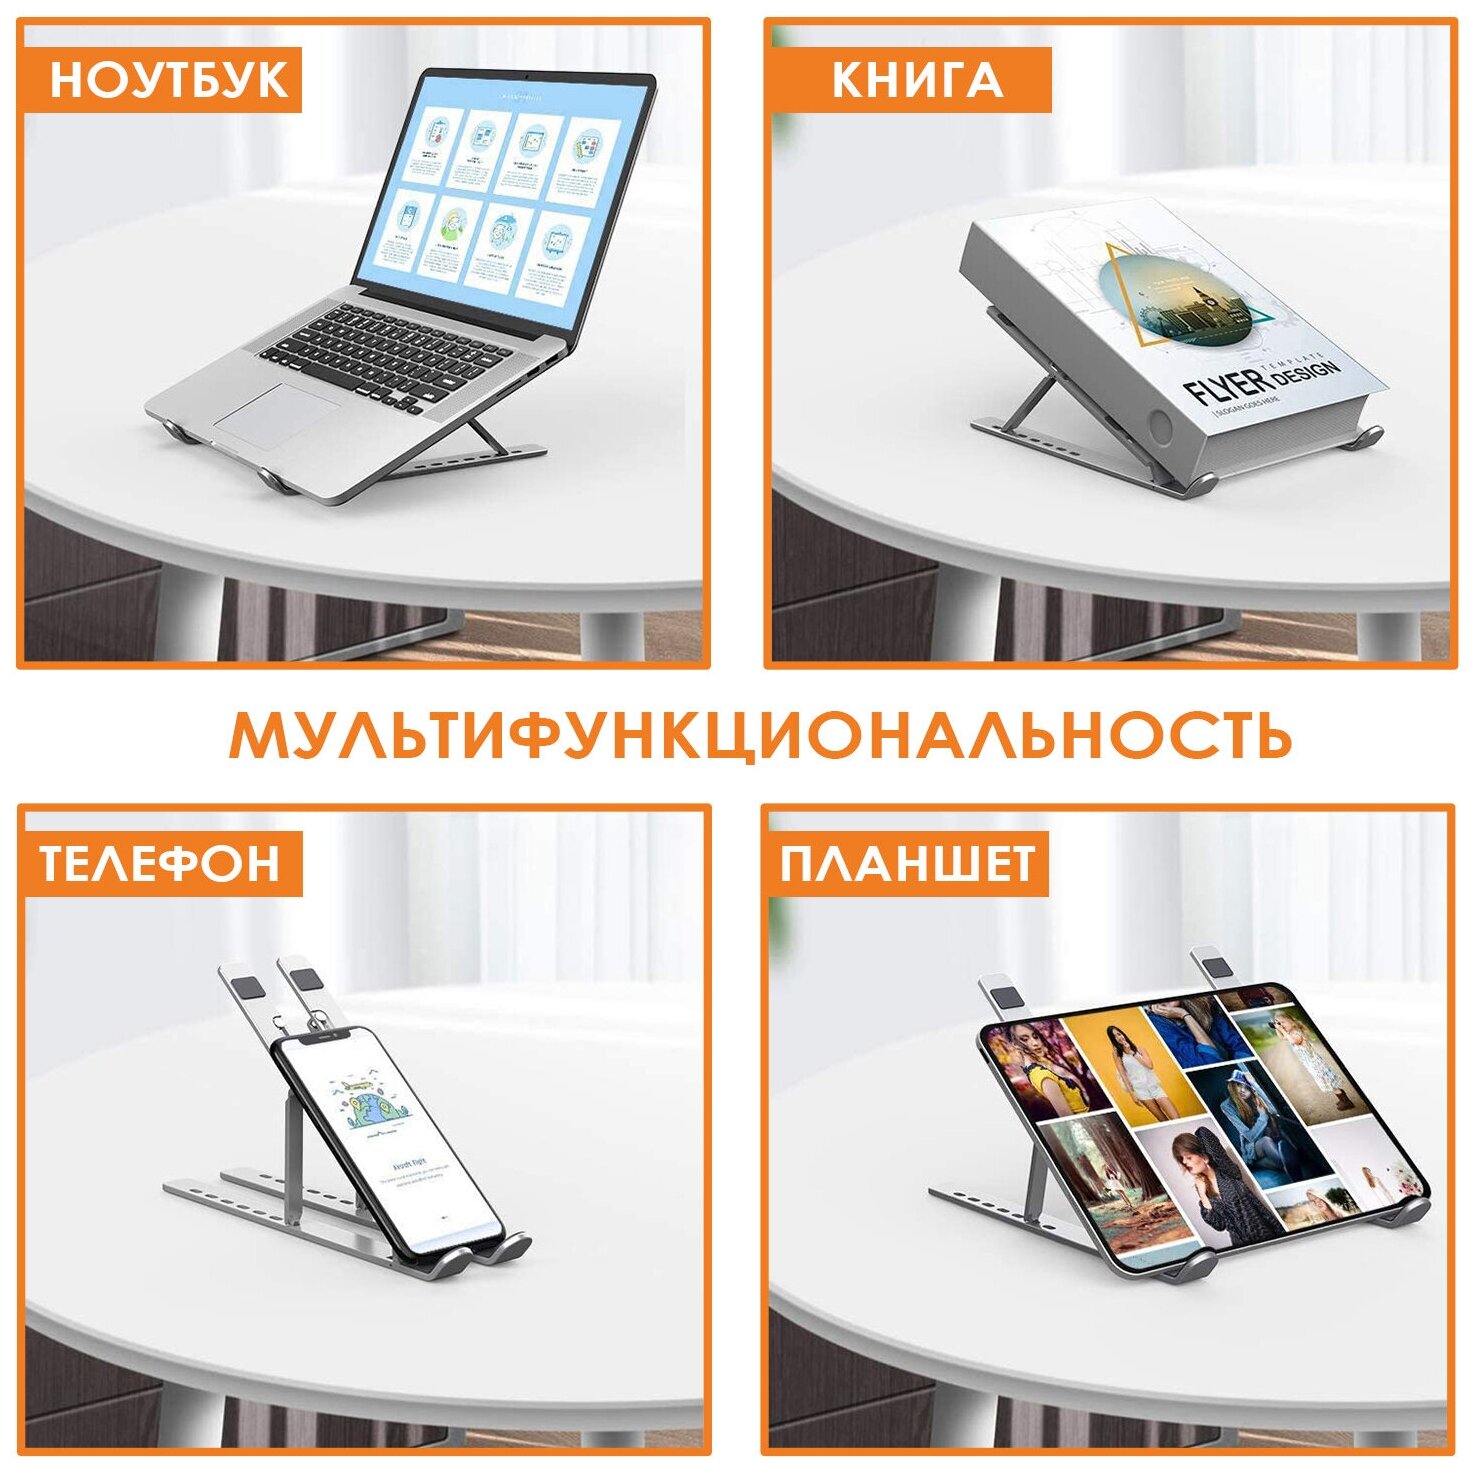 Складная алюминиевая подставка SimpleShop для ноутбука, планшета и телефона. Регулируемая, портативная с чехлом для хранения